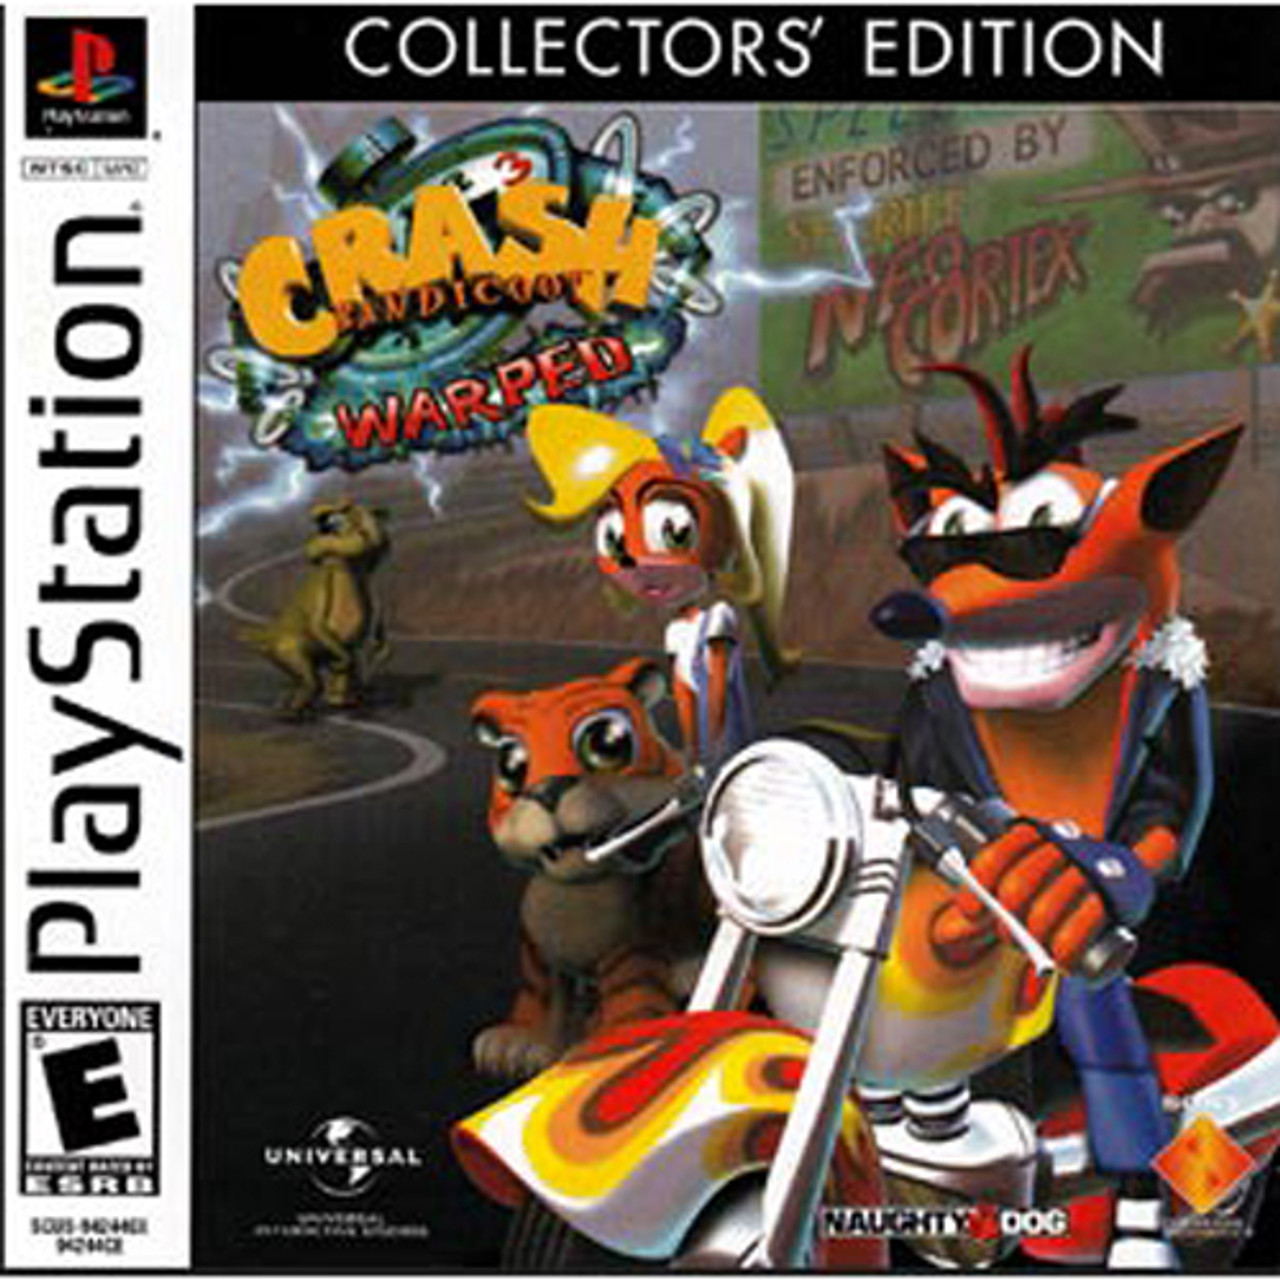 Crash Bandicoot Warped Collectors' Edition PS1 Game Collector's Edition